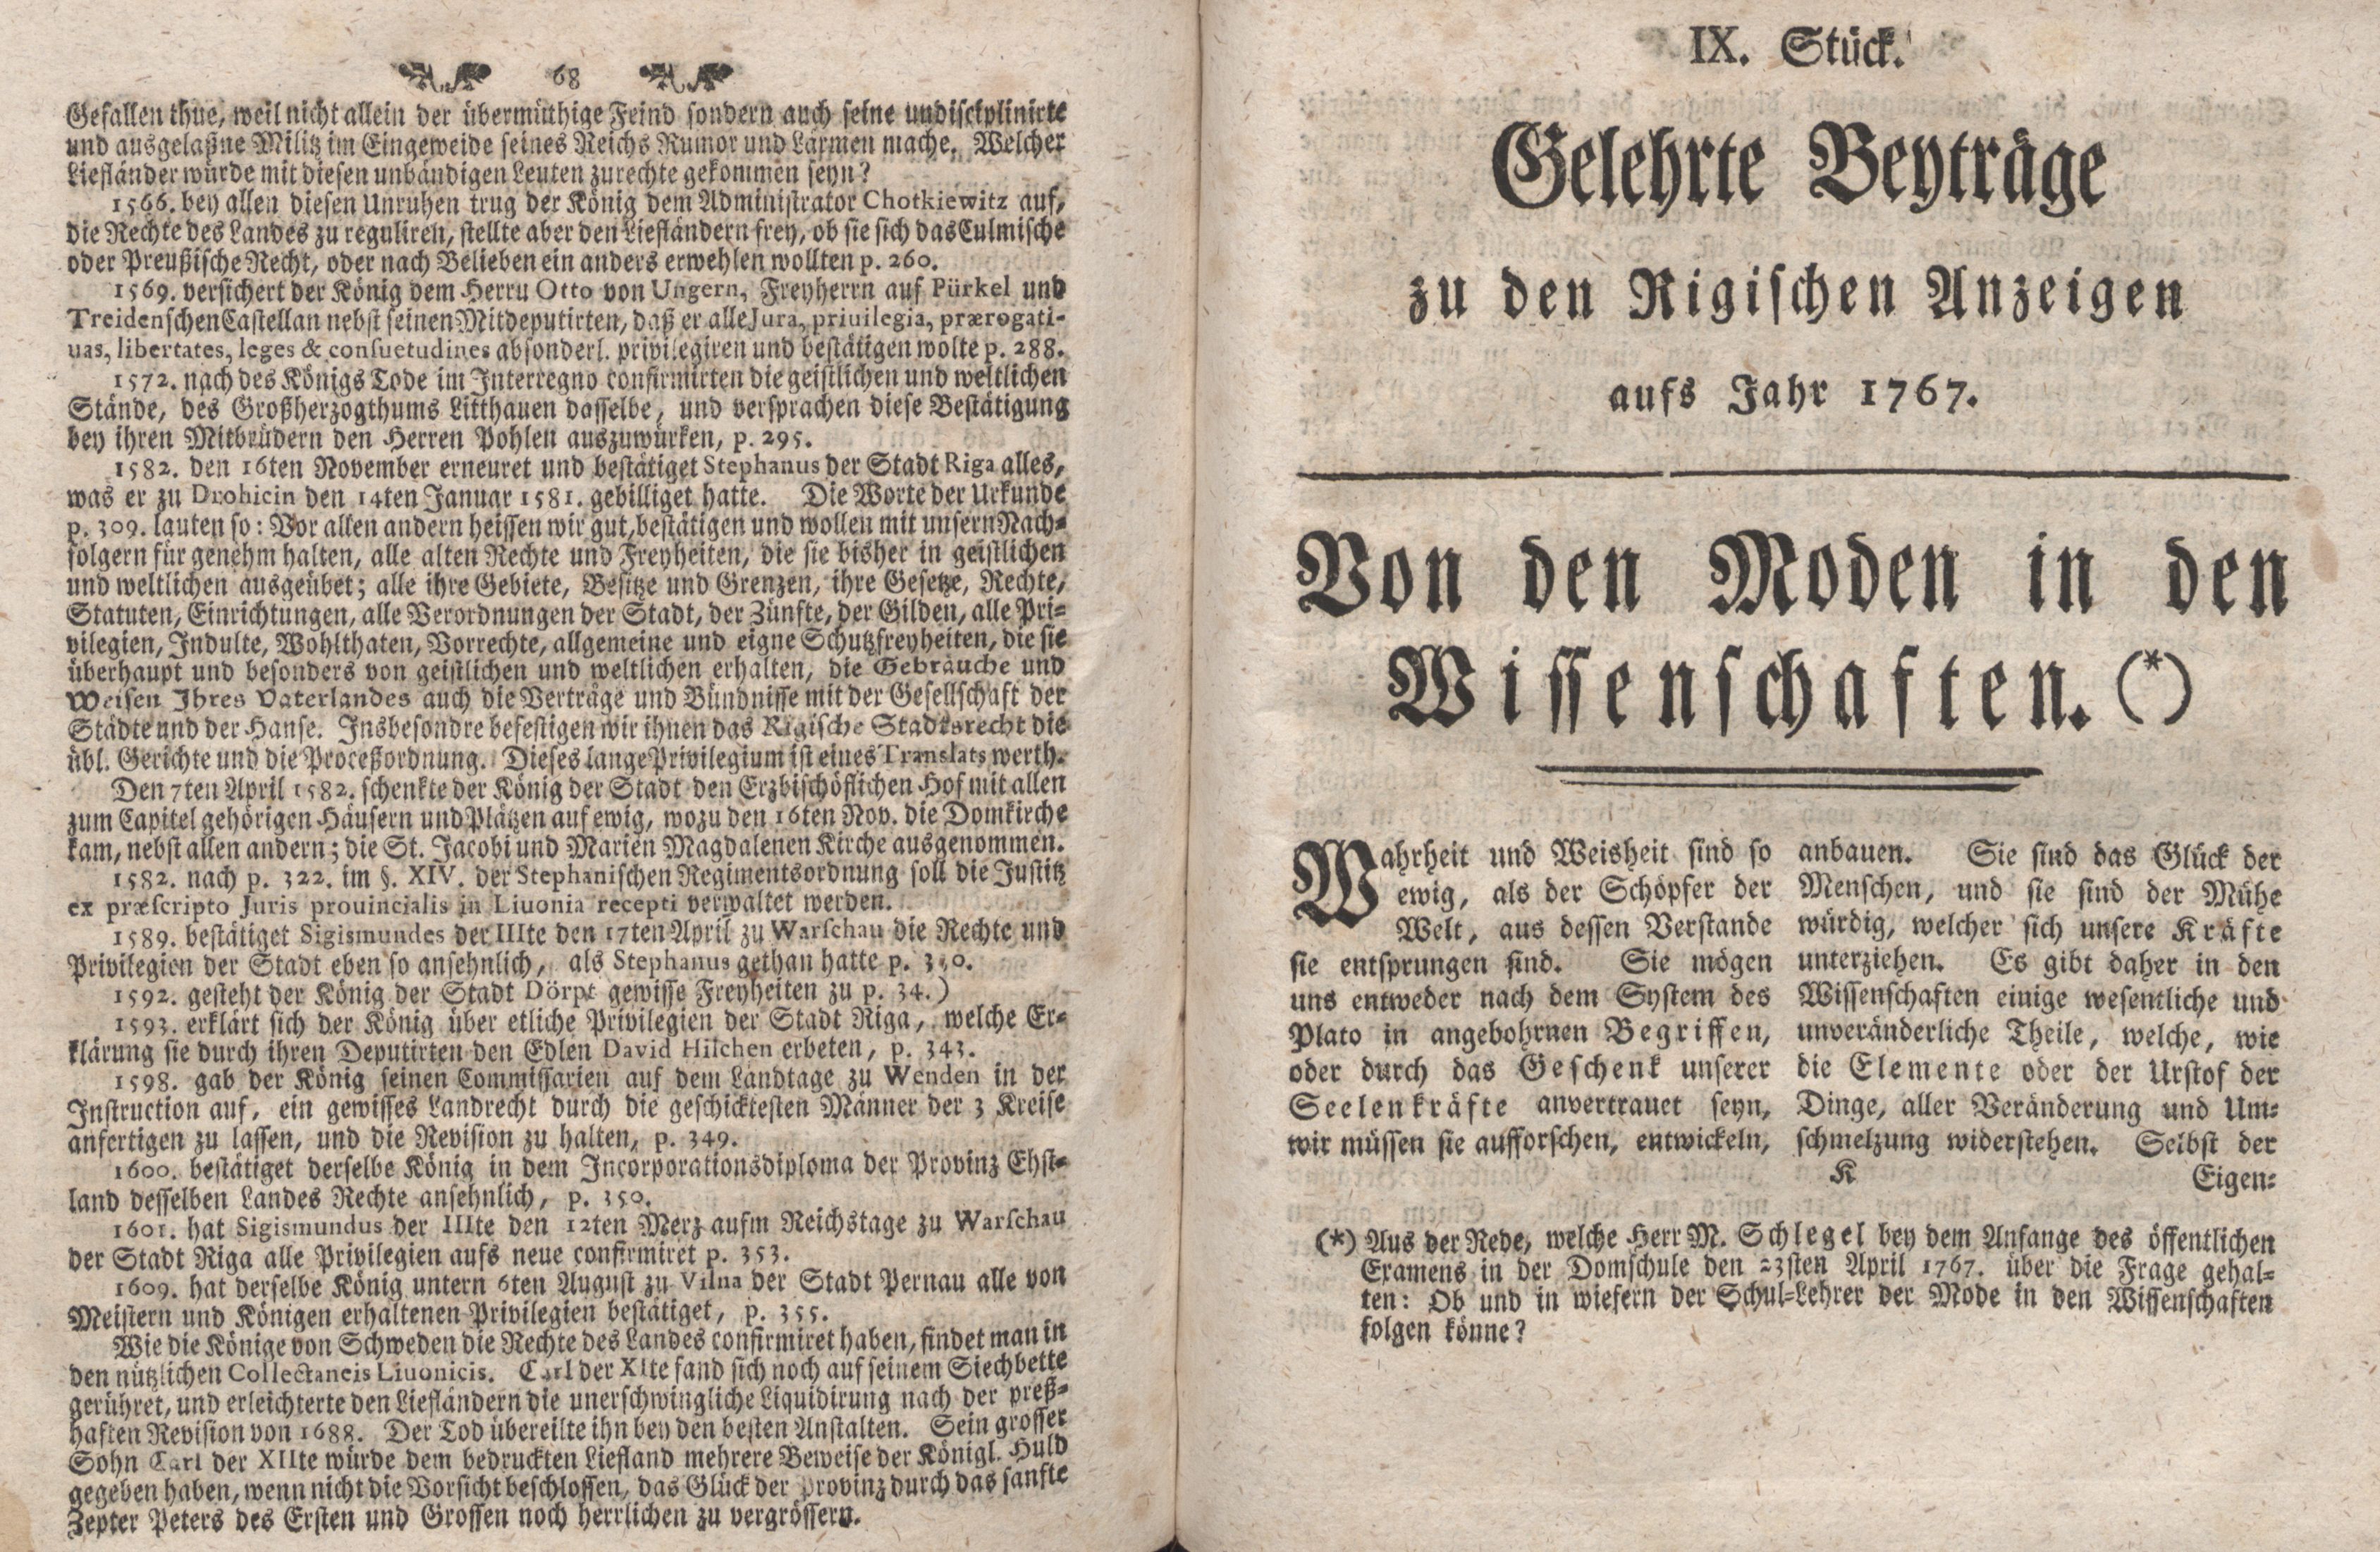 Von den Moden in den Wissenschaften (1767) | 1. (68-69) Основной текст